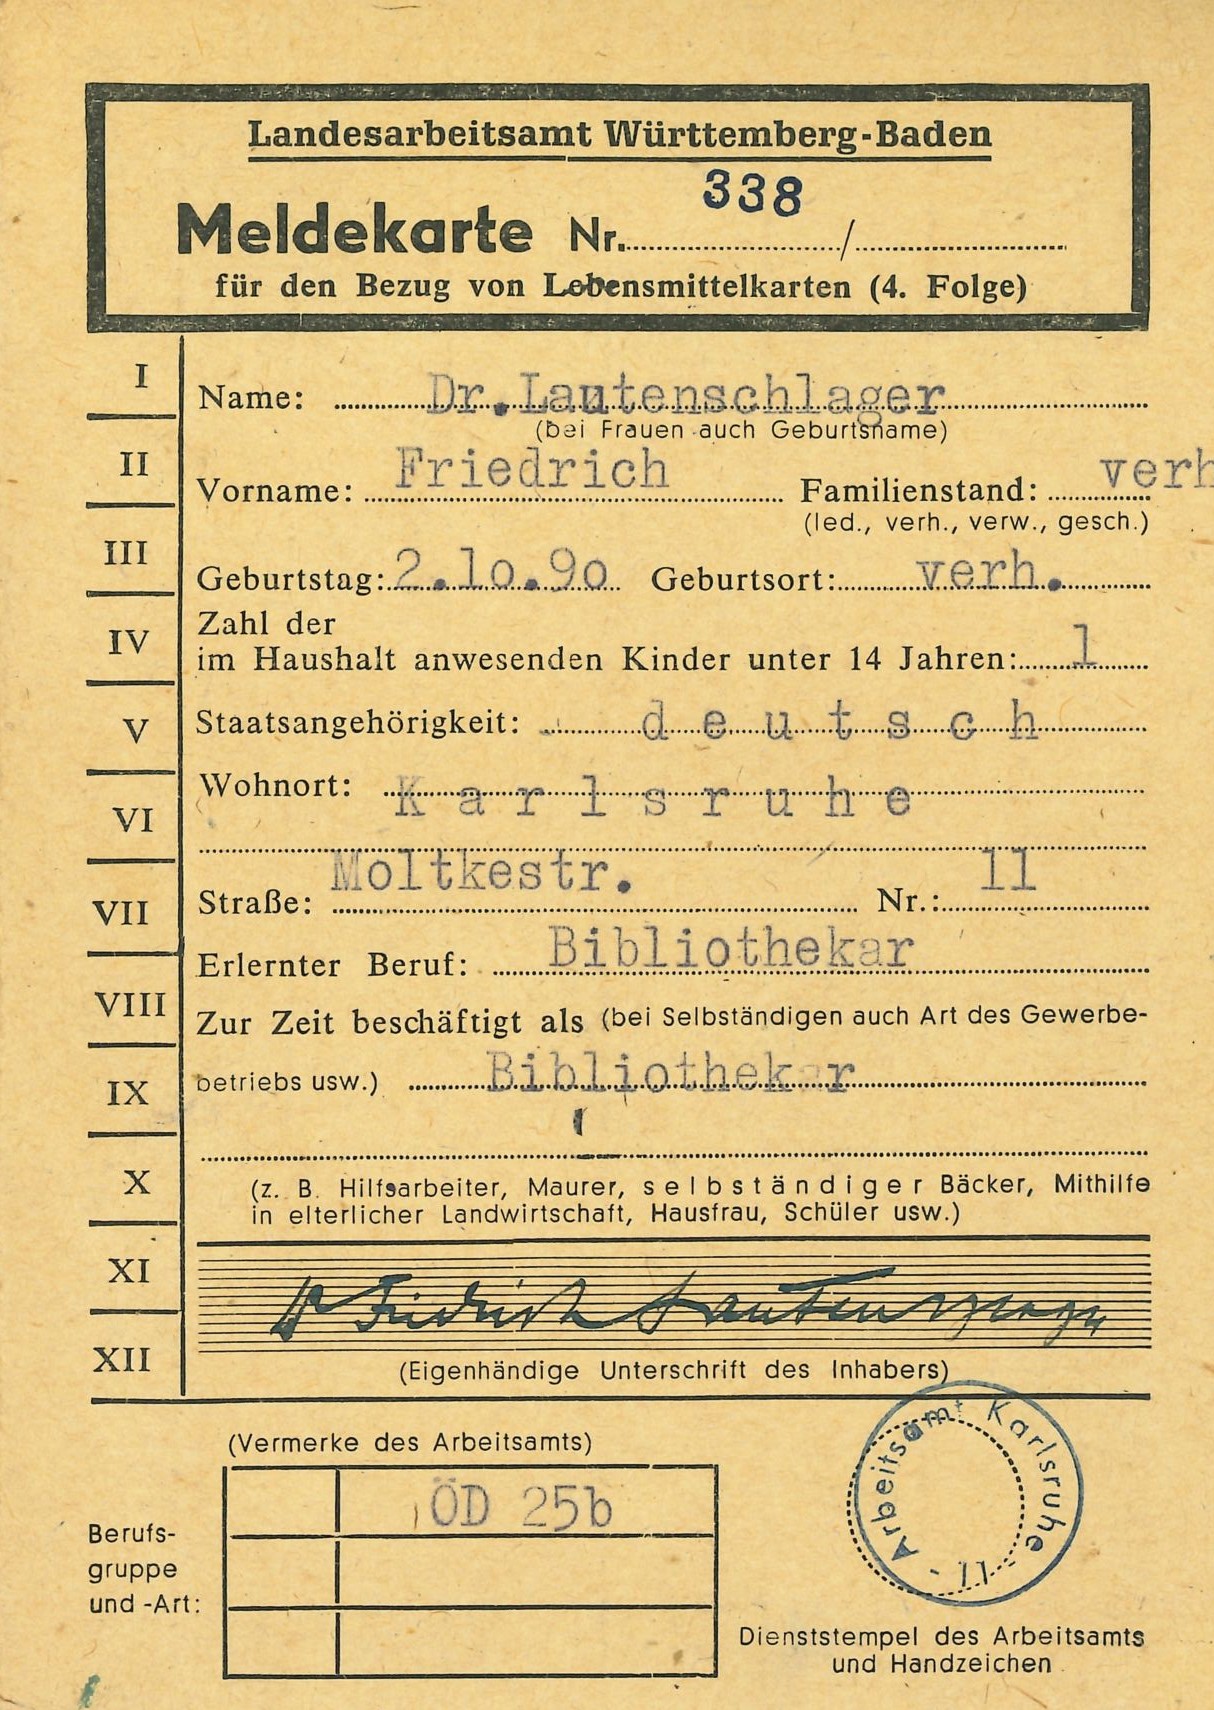 Die erste Seite des Dokuments mit dem Titel "Meldekarte Nr. 338" benennt de persönlichen Daten des Inhabers Friedrich Lautenschlager, ordnet ihn der Berufsgruppe ÖD 25b zu und ist mit einem Stempel des Arbeitsamtes Karlsruhe versehen.